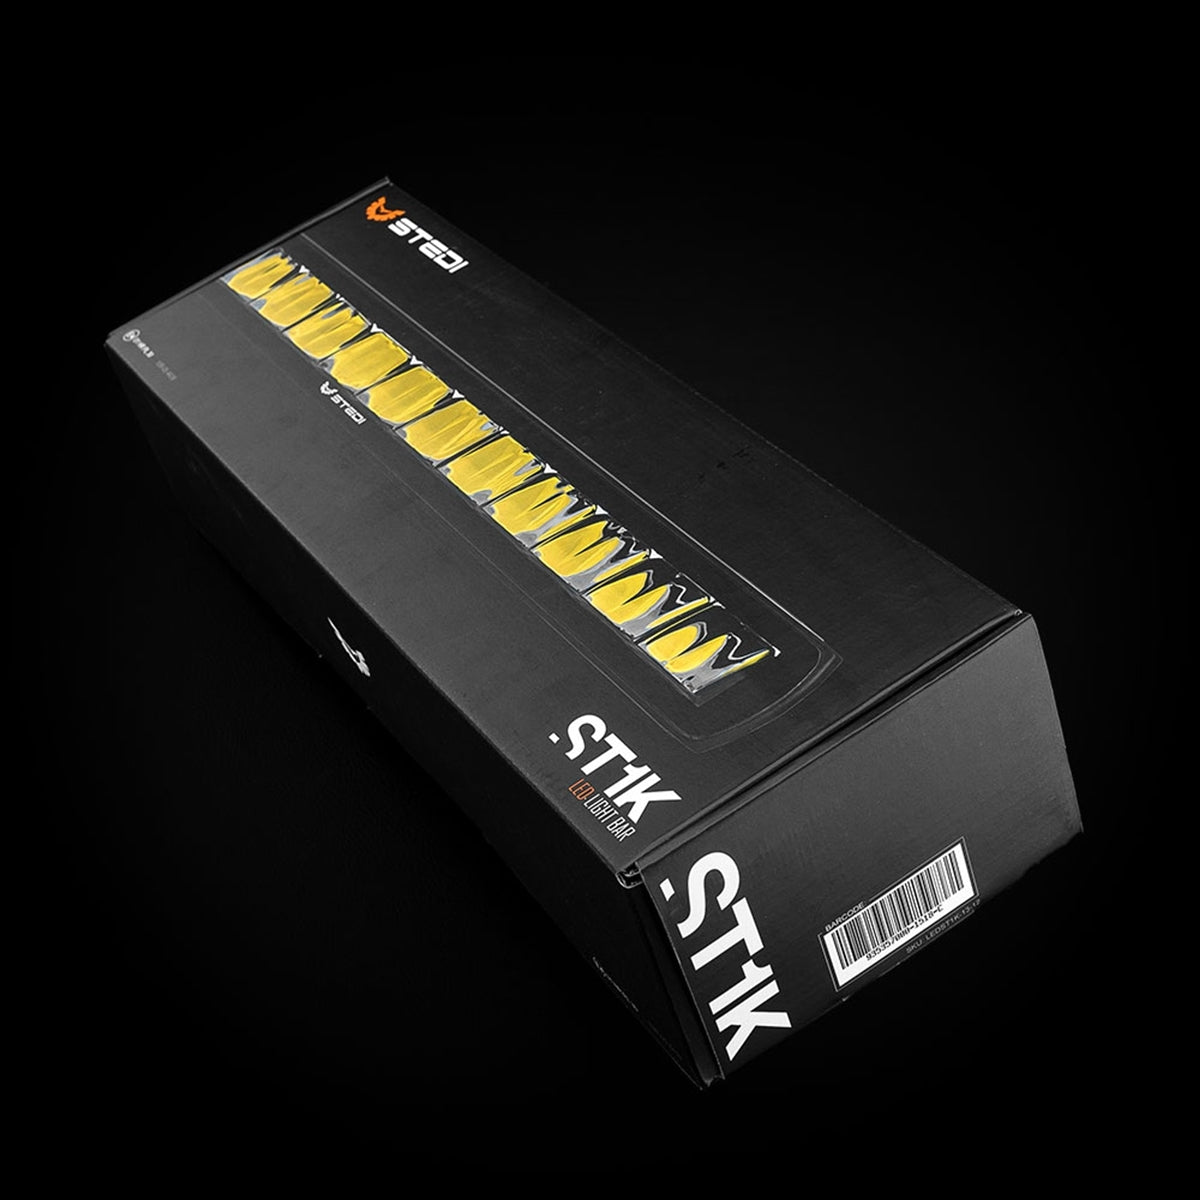 Stedi ST1K 13.5 in box